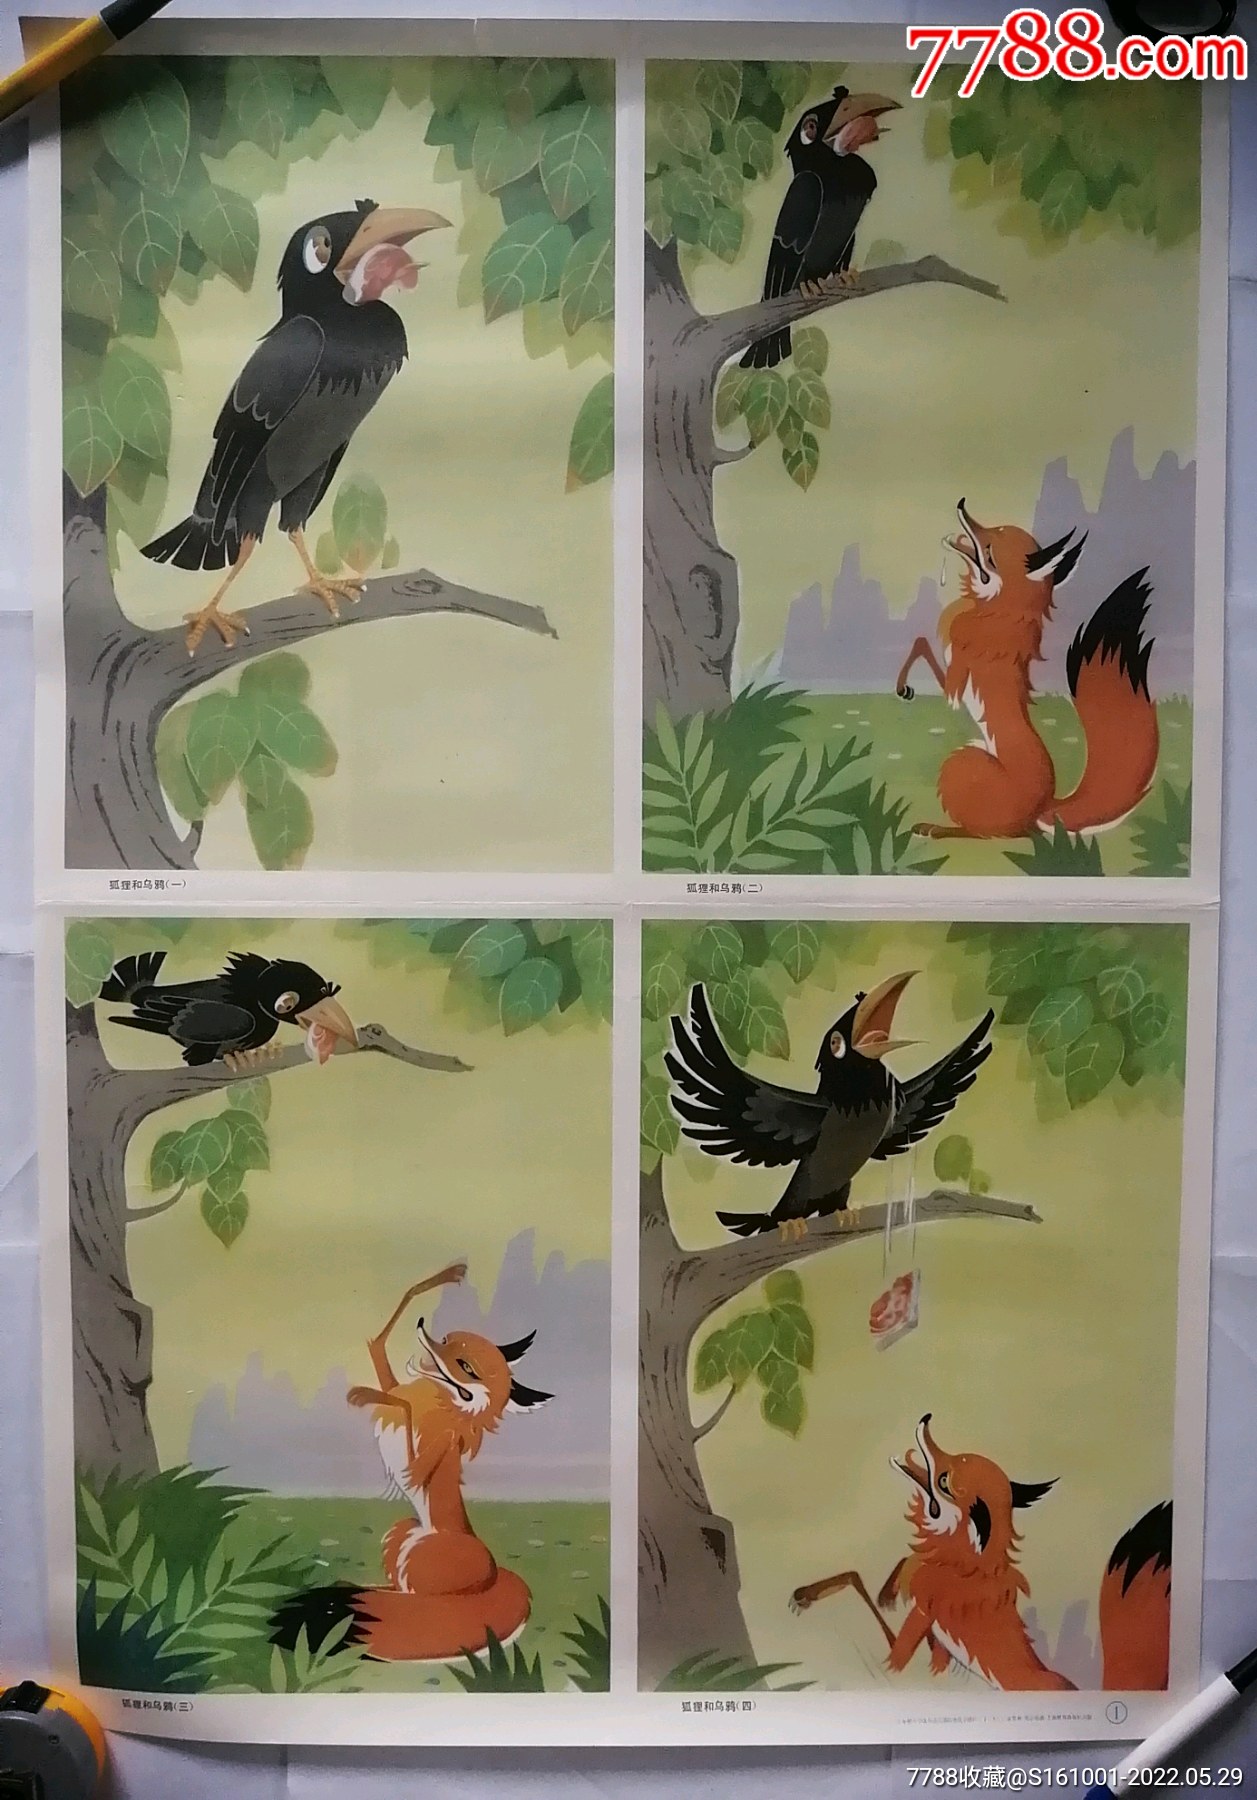 《狐狸和乌鸦》图画一幅